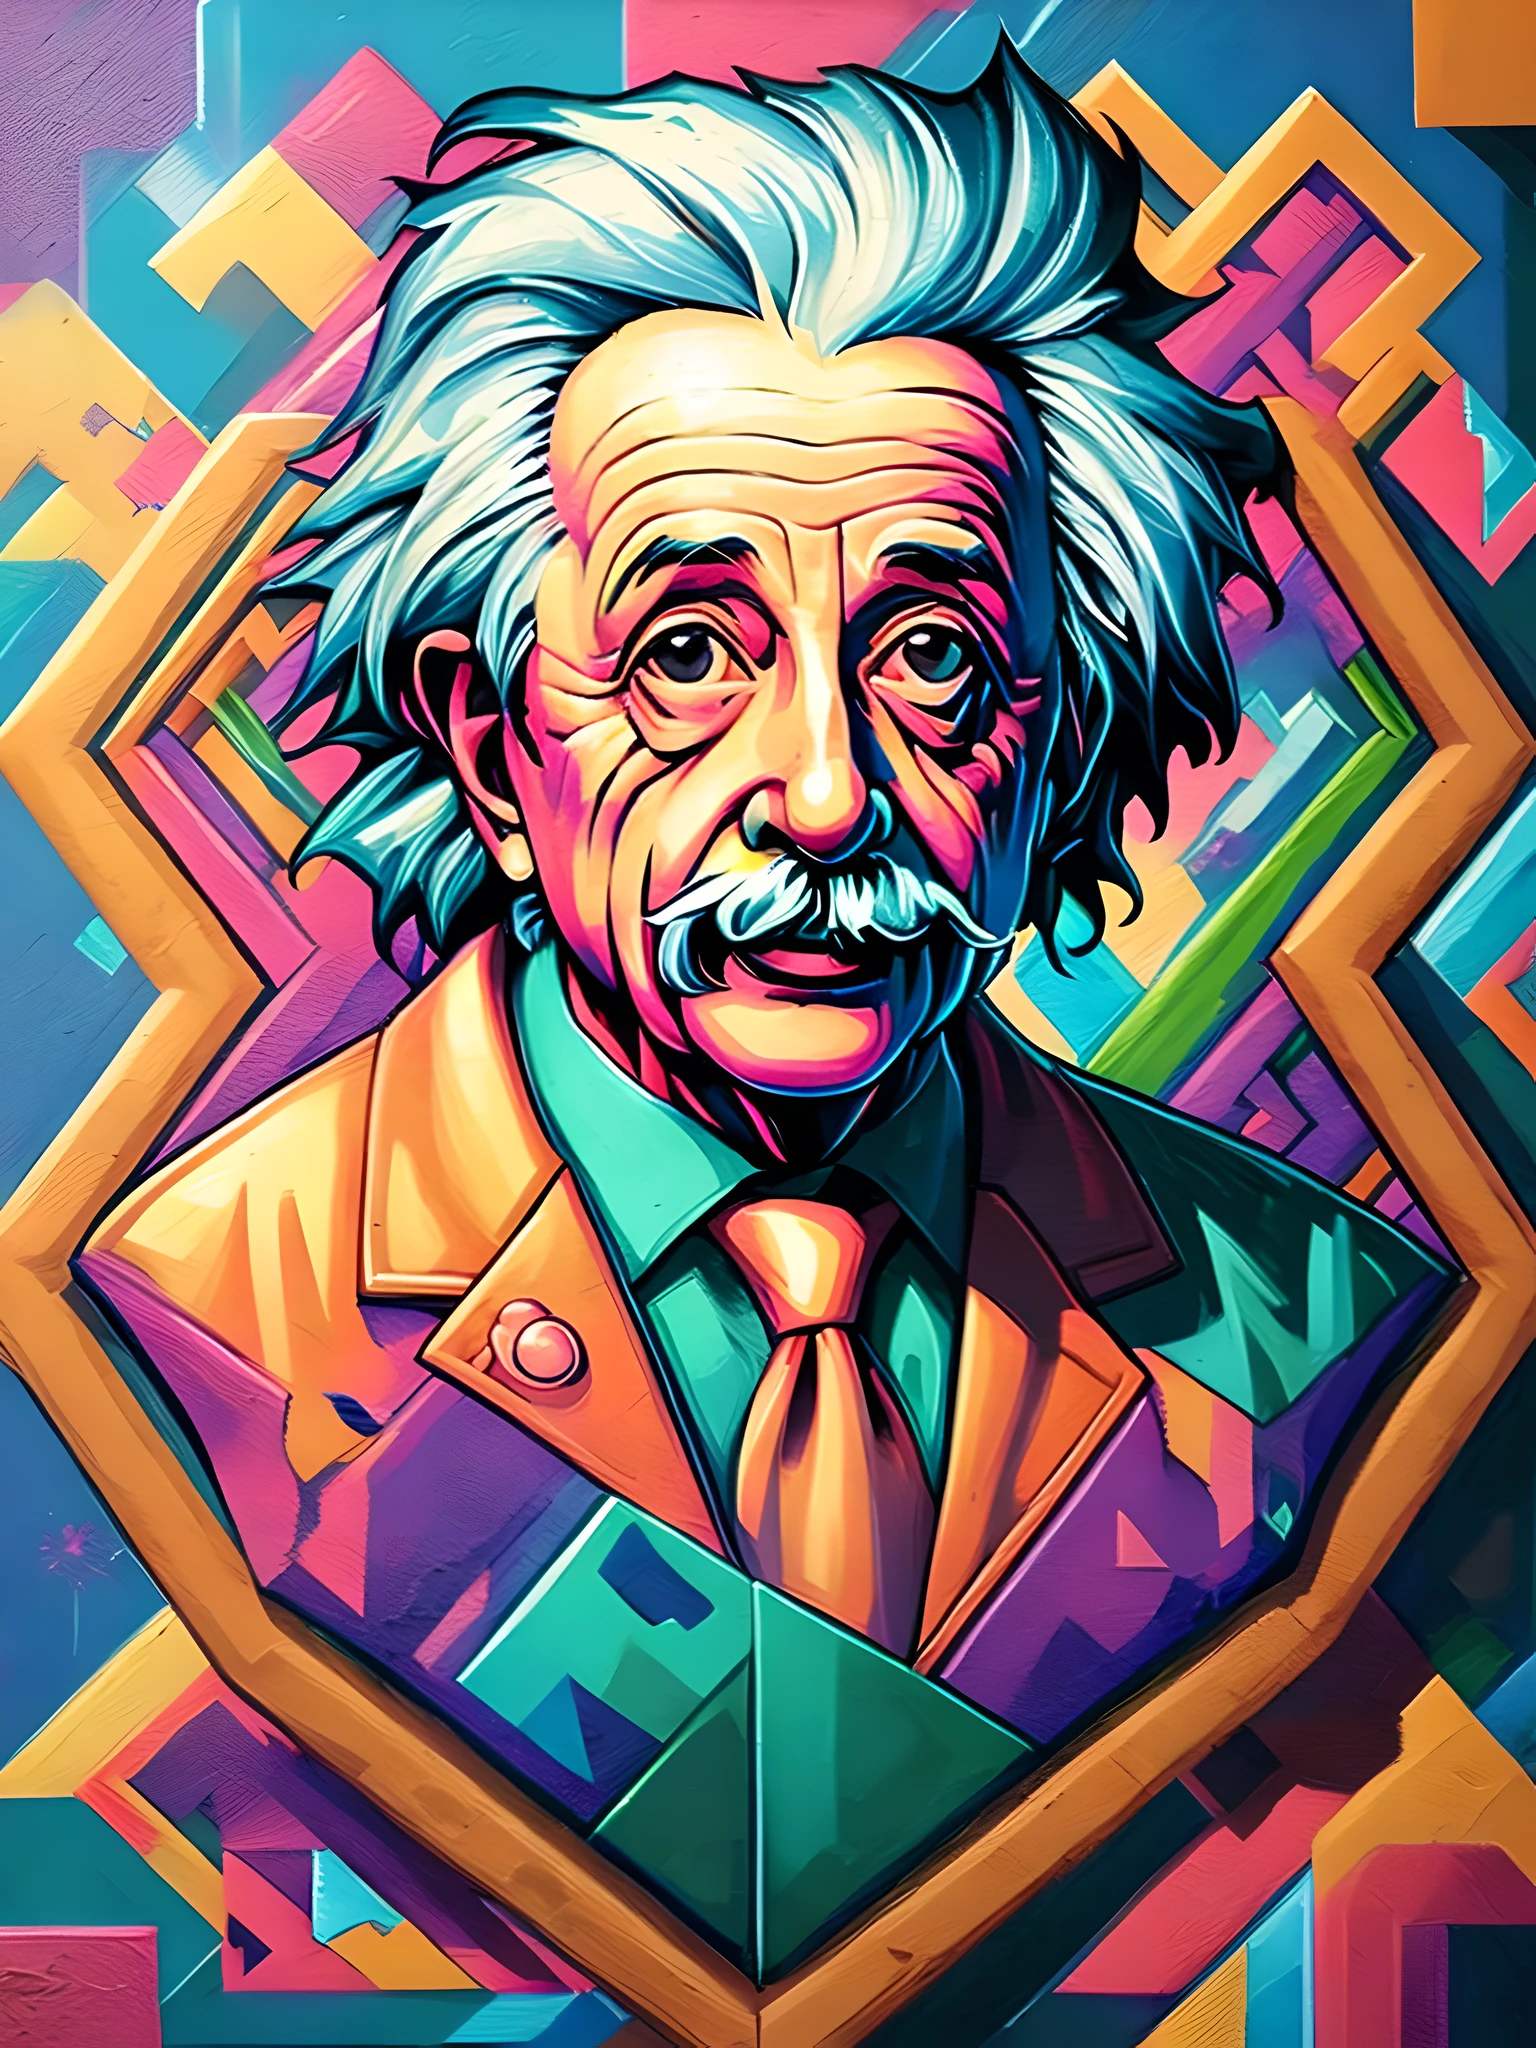 (Лучшее качество),(шедевр),(Ультрадетализированный),(высокая детализация),(чрезвычайно подробный),центрированный, изометрический, фреска, граффити, состав, формы, узоры, vector art ready to print highly detailed граффити illustration of Einstein